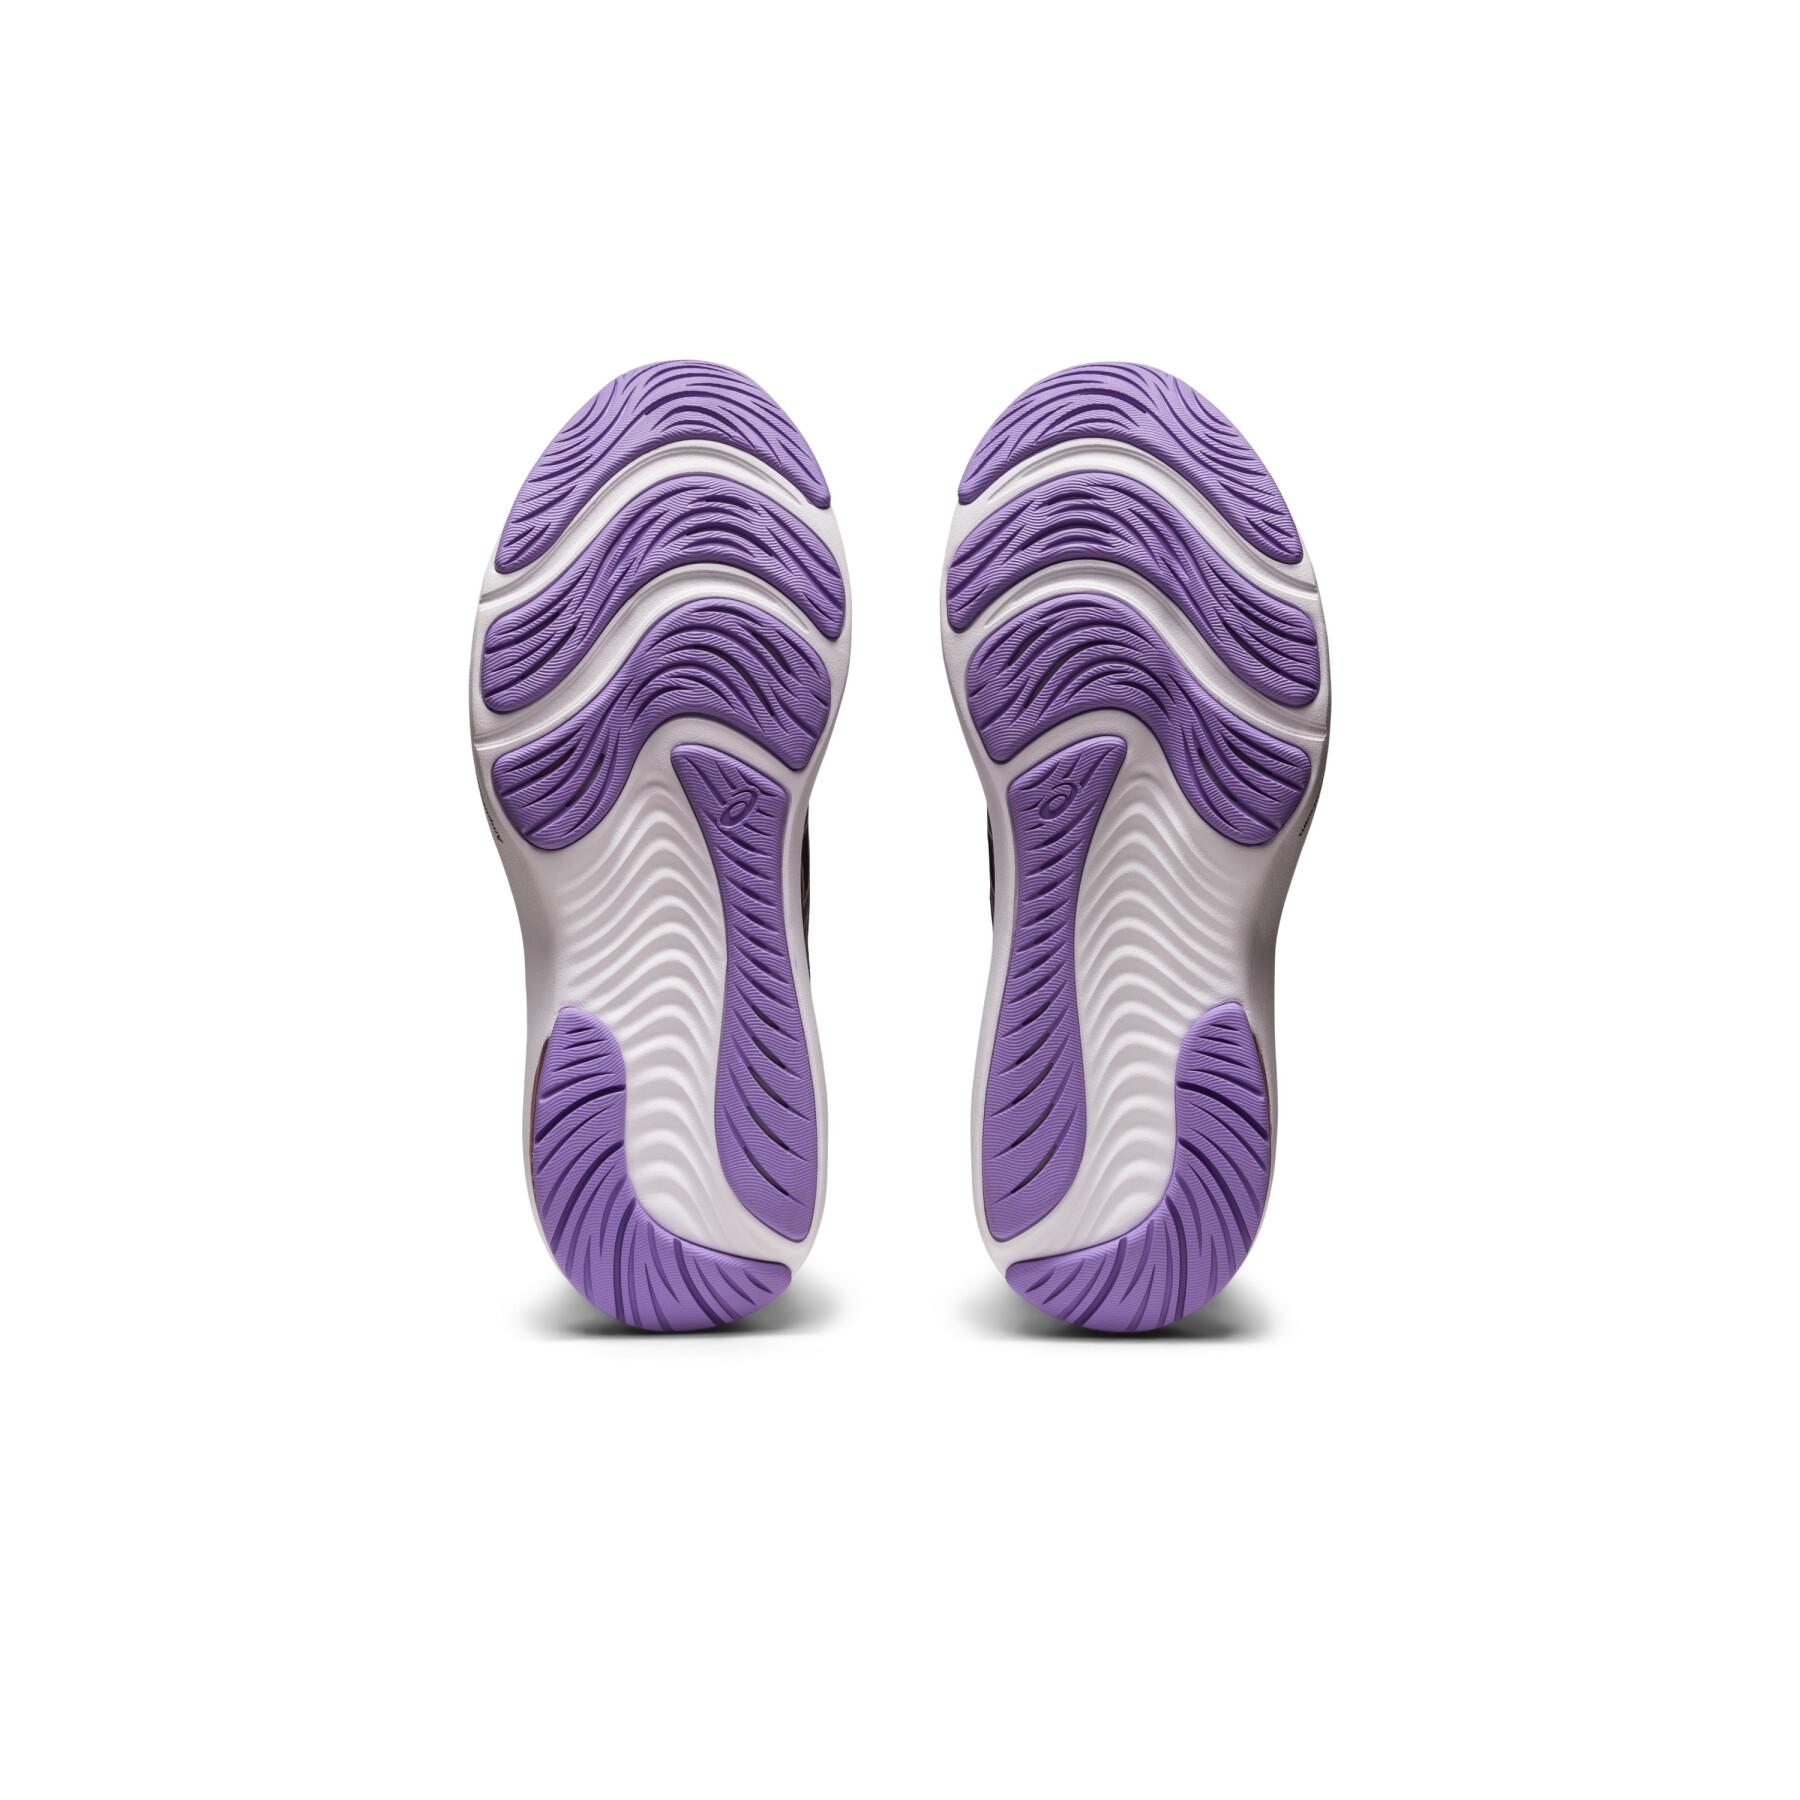 Zapatos de mujer running Asics Gel-Pulse 14